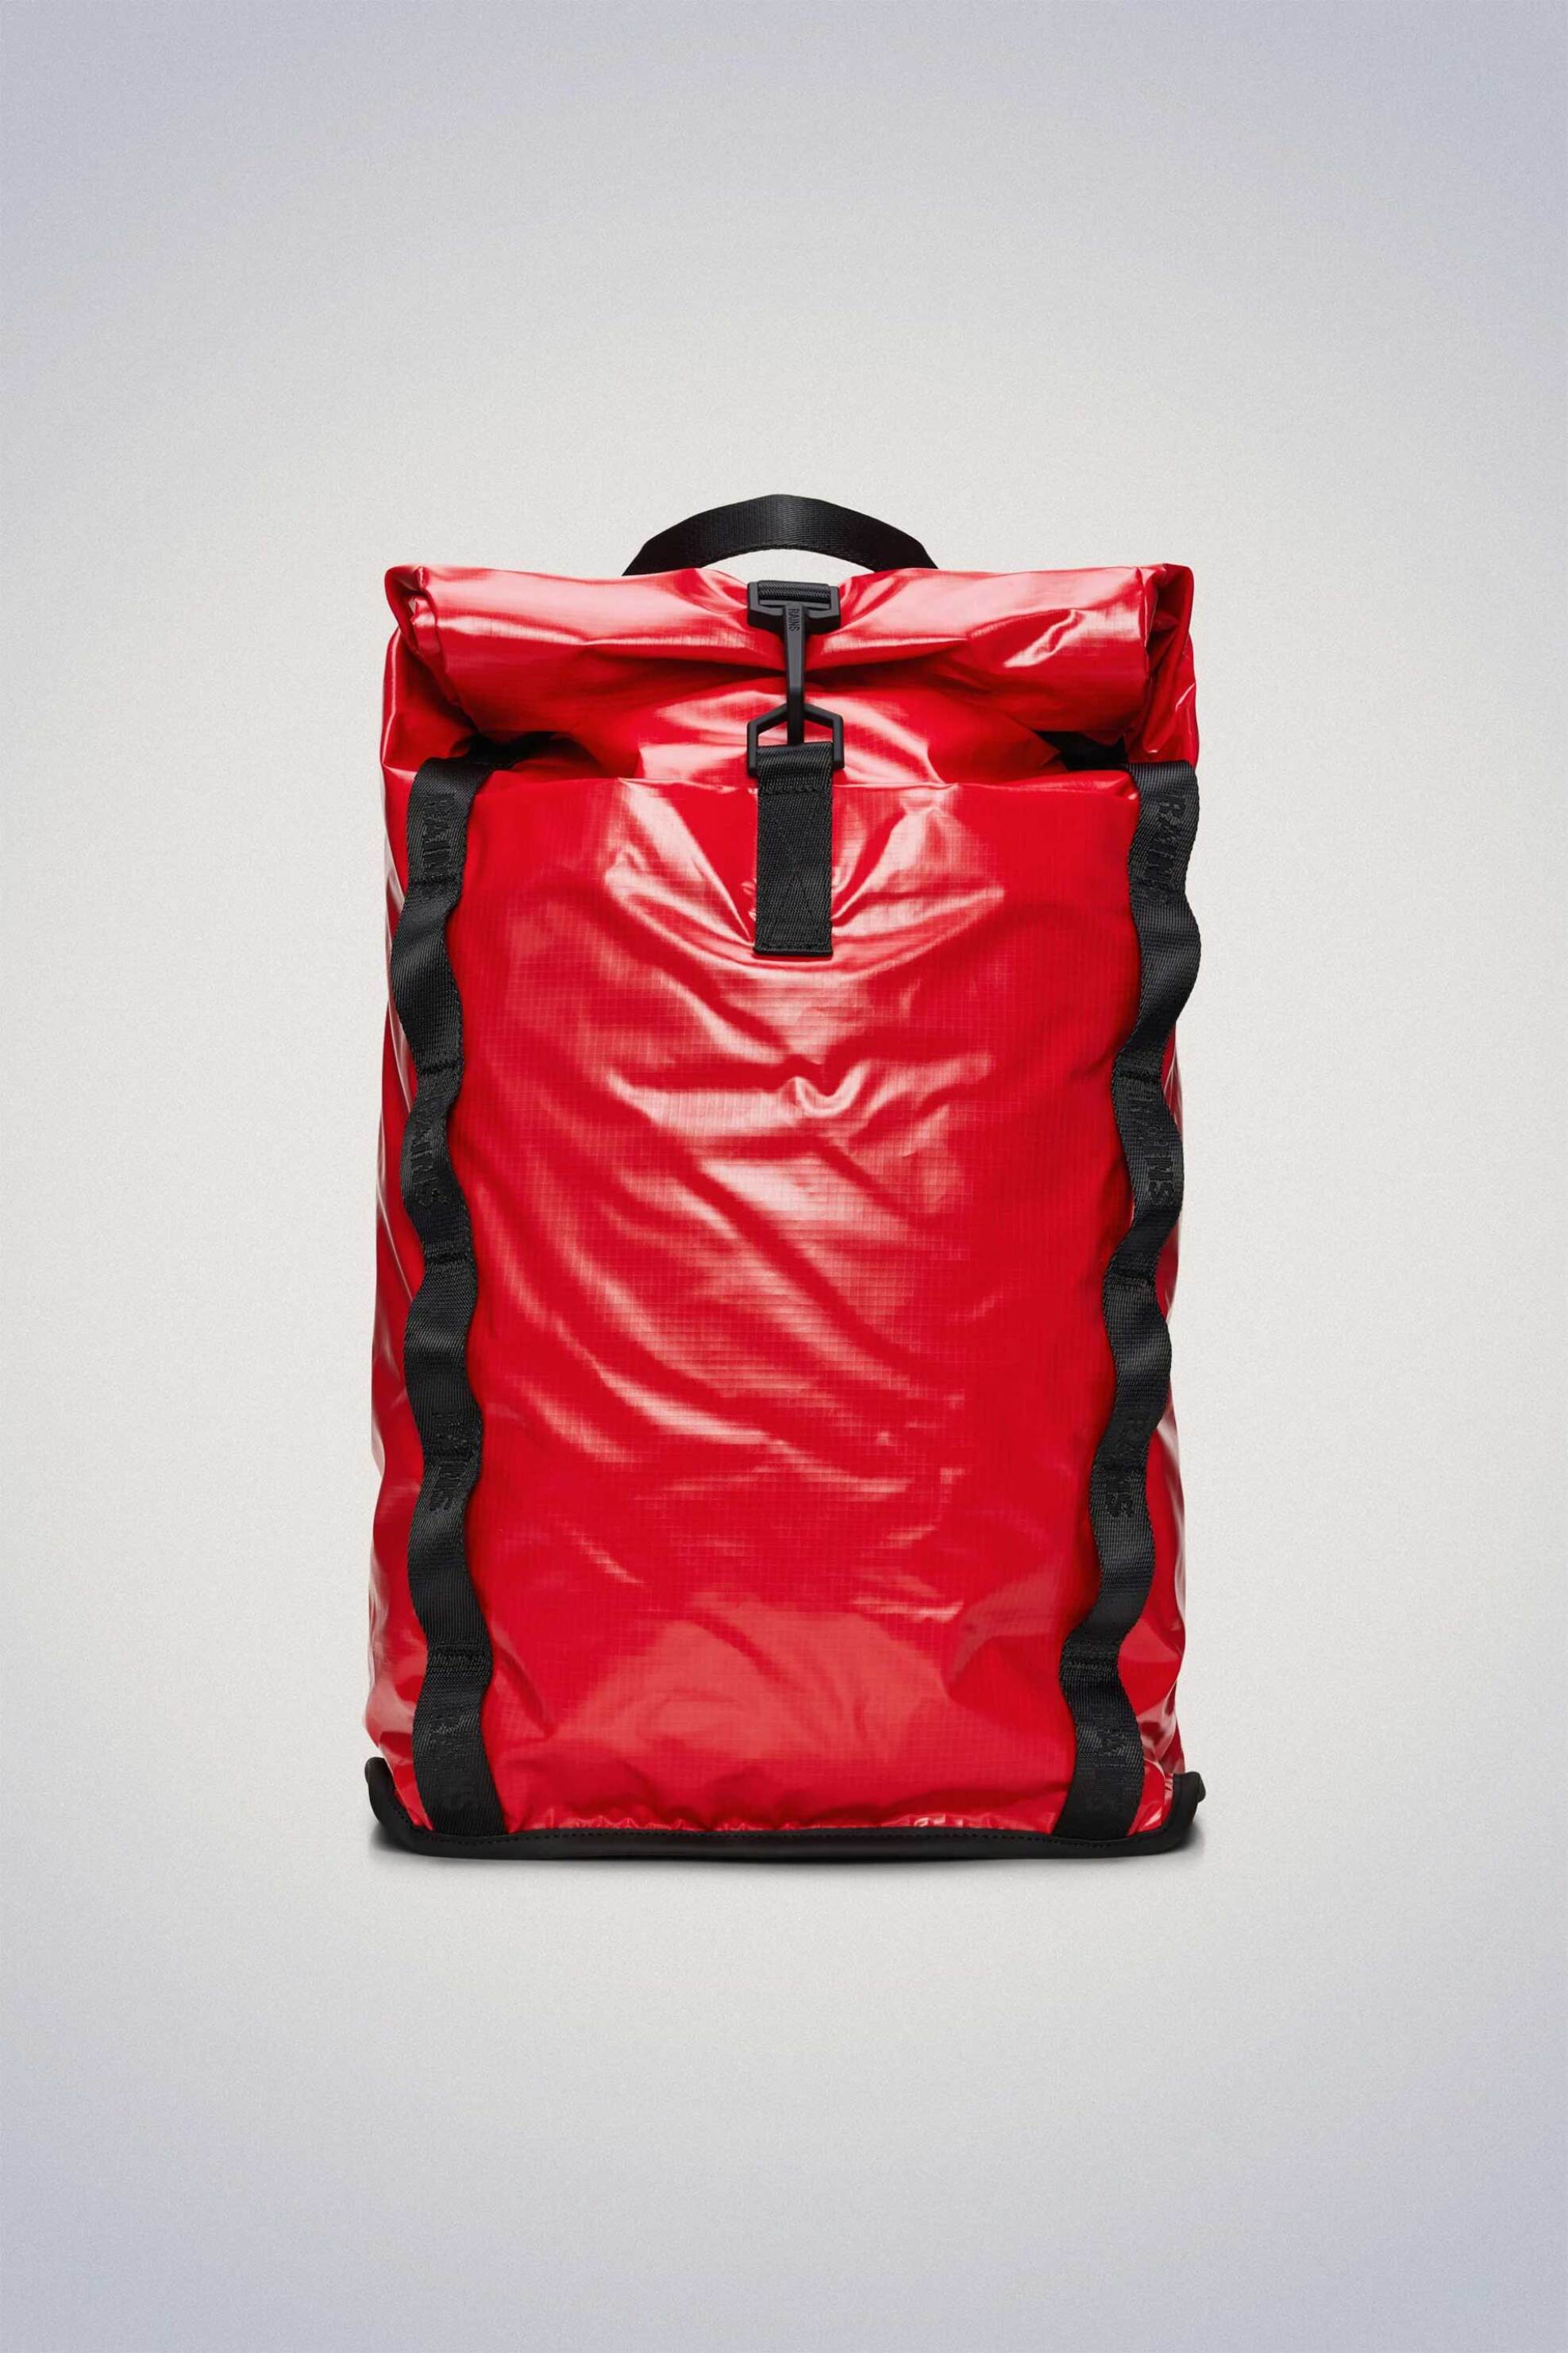 Ανδρική Μόδα > Ανδρικές Τσάντες > Ανδρικά Σακίδια & Backpacks Rains unisex αδιάβροχο backpack "Sibu Rolltop Rucksack" - RNSSS2414770 Κόκκινο